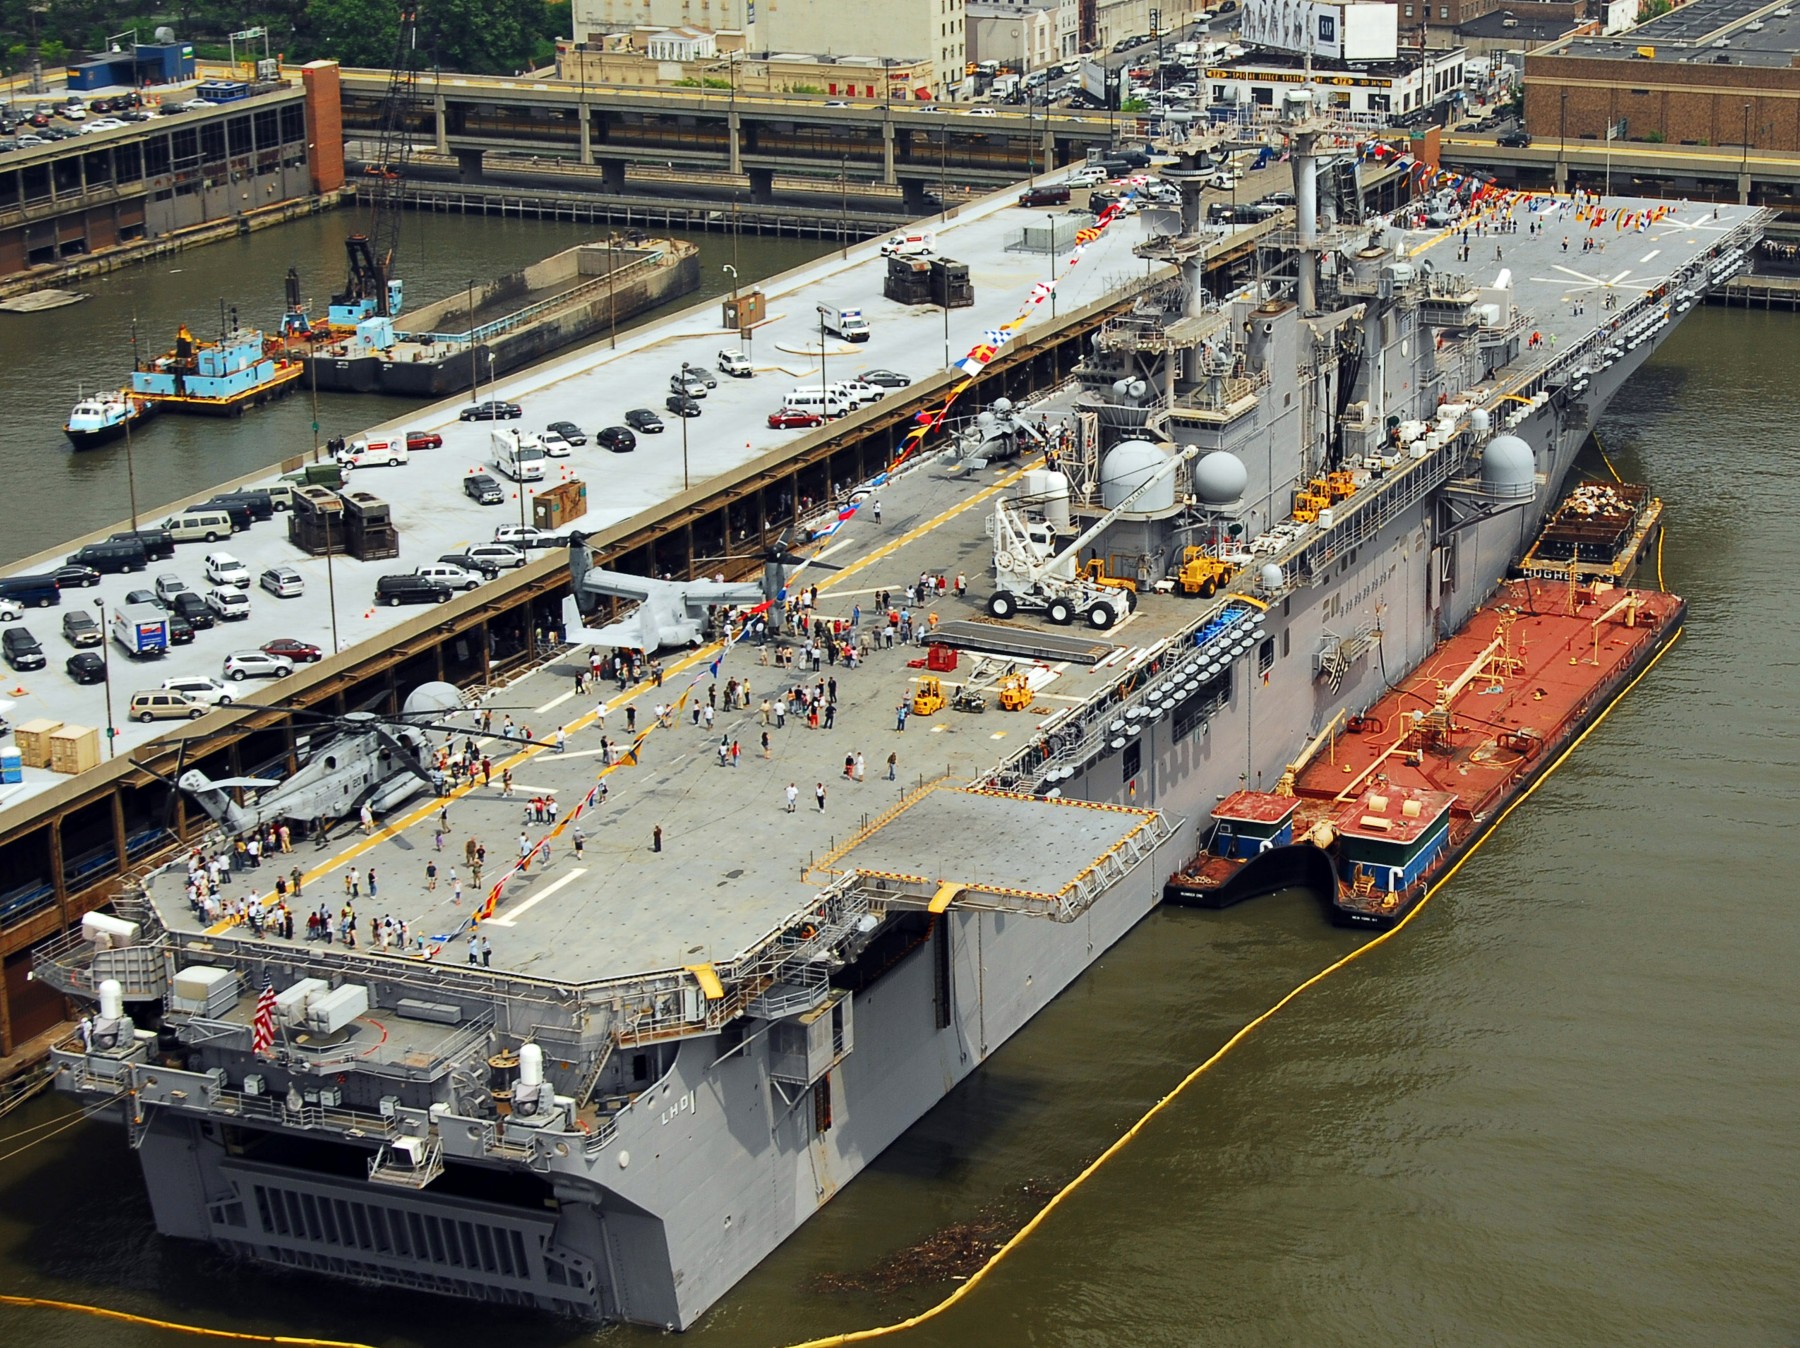 lhd-1 uss wasp amphibious assault landing ship dock helicopter us navy fleet week new york 109